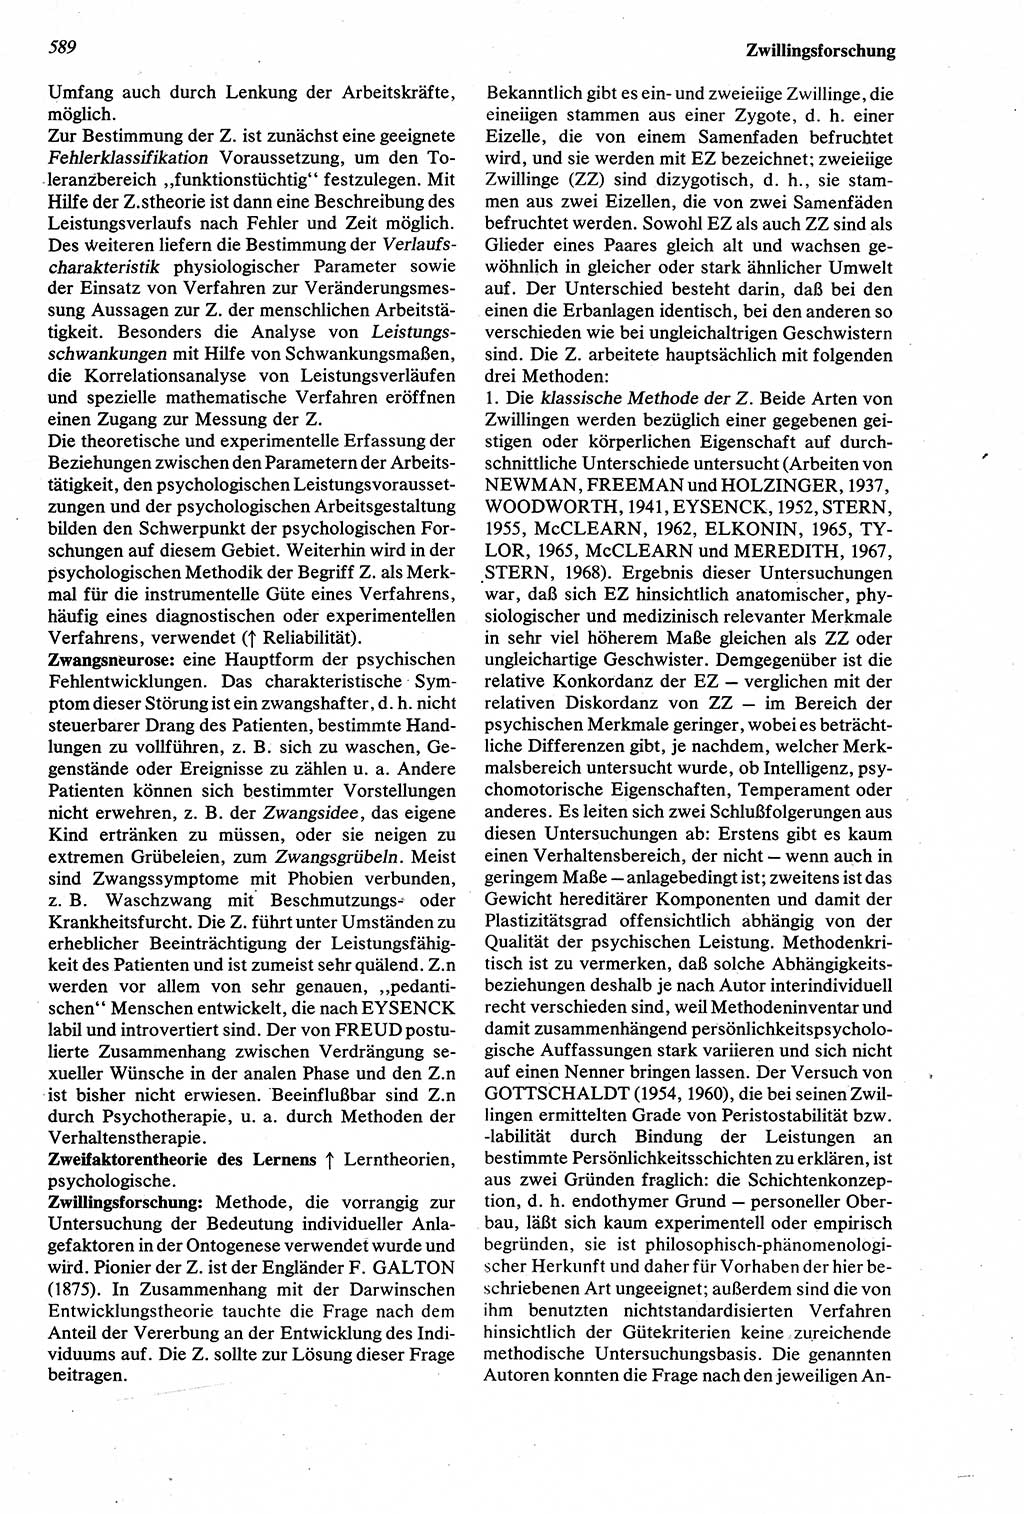 Wörterbuch der Psychologie [Deutsche Demokratische Republik (DDR)] 1976, Seite 589 (Wb. Psych. DDR 1976, S. 589)